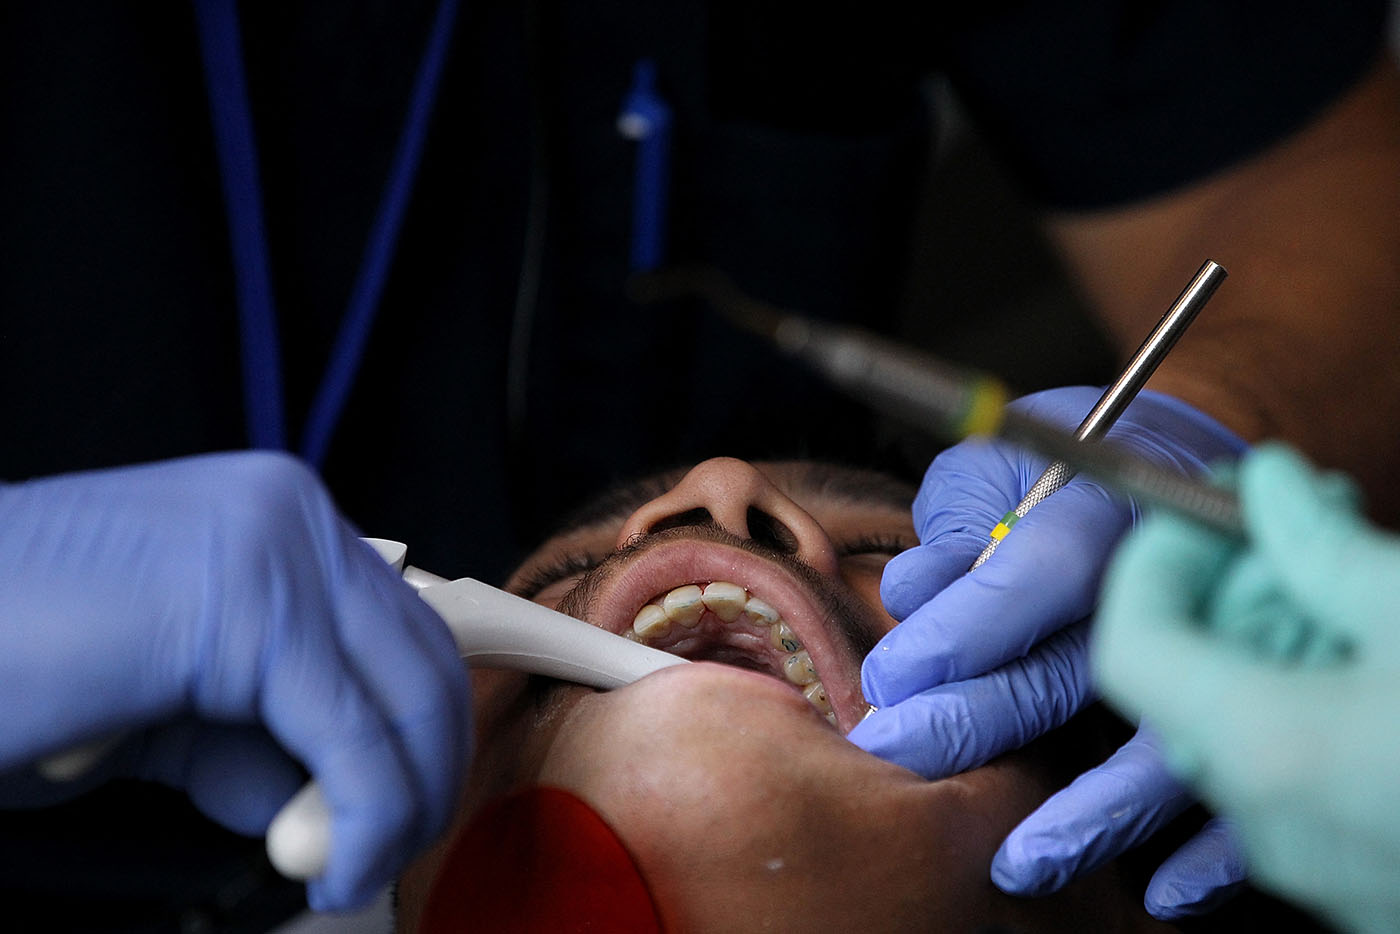 Materiales naturales ayudarían a resolver el problema de la odontología en torno a la adhesión y el uso del ácido fluorhídrico, que puede ser peligroso. Foto: Justin Sullivan - Getty Images North America Getty Images via AFP.